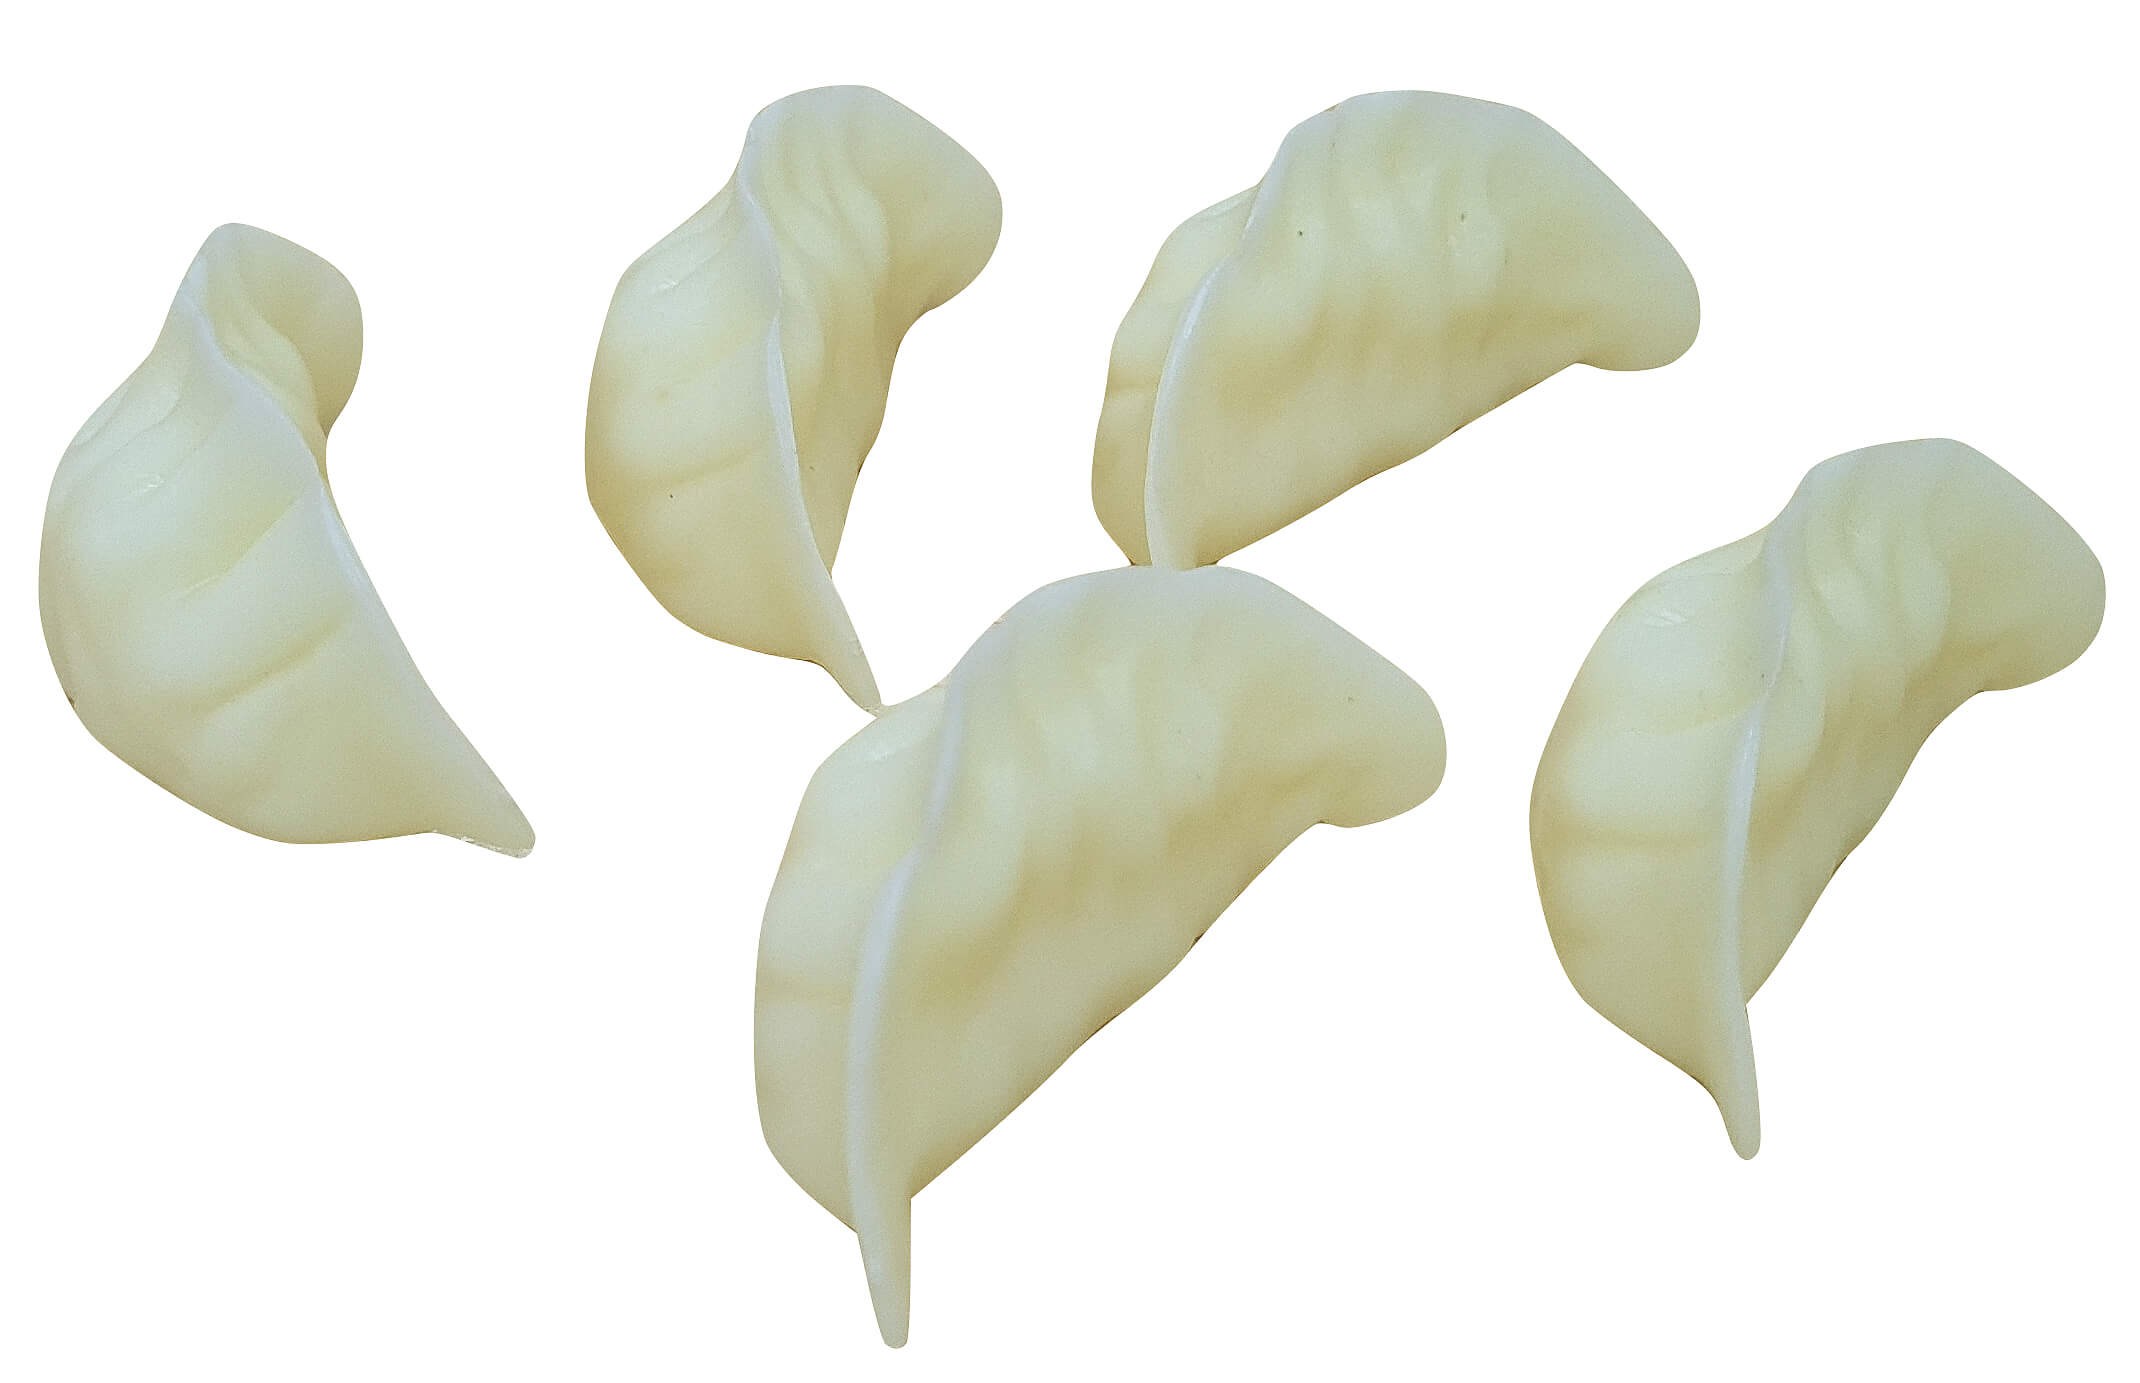 Replica Gyoza Pot Sticker Dumplings -  